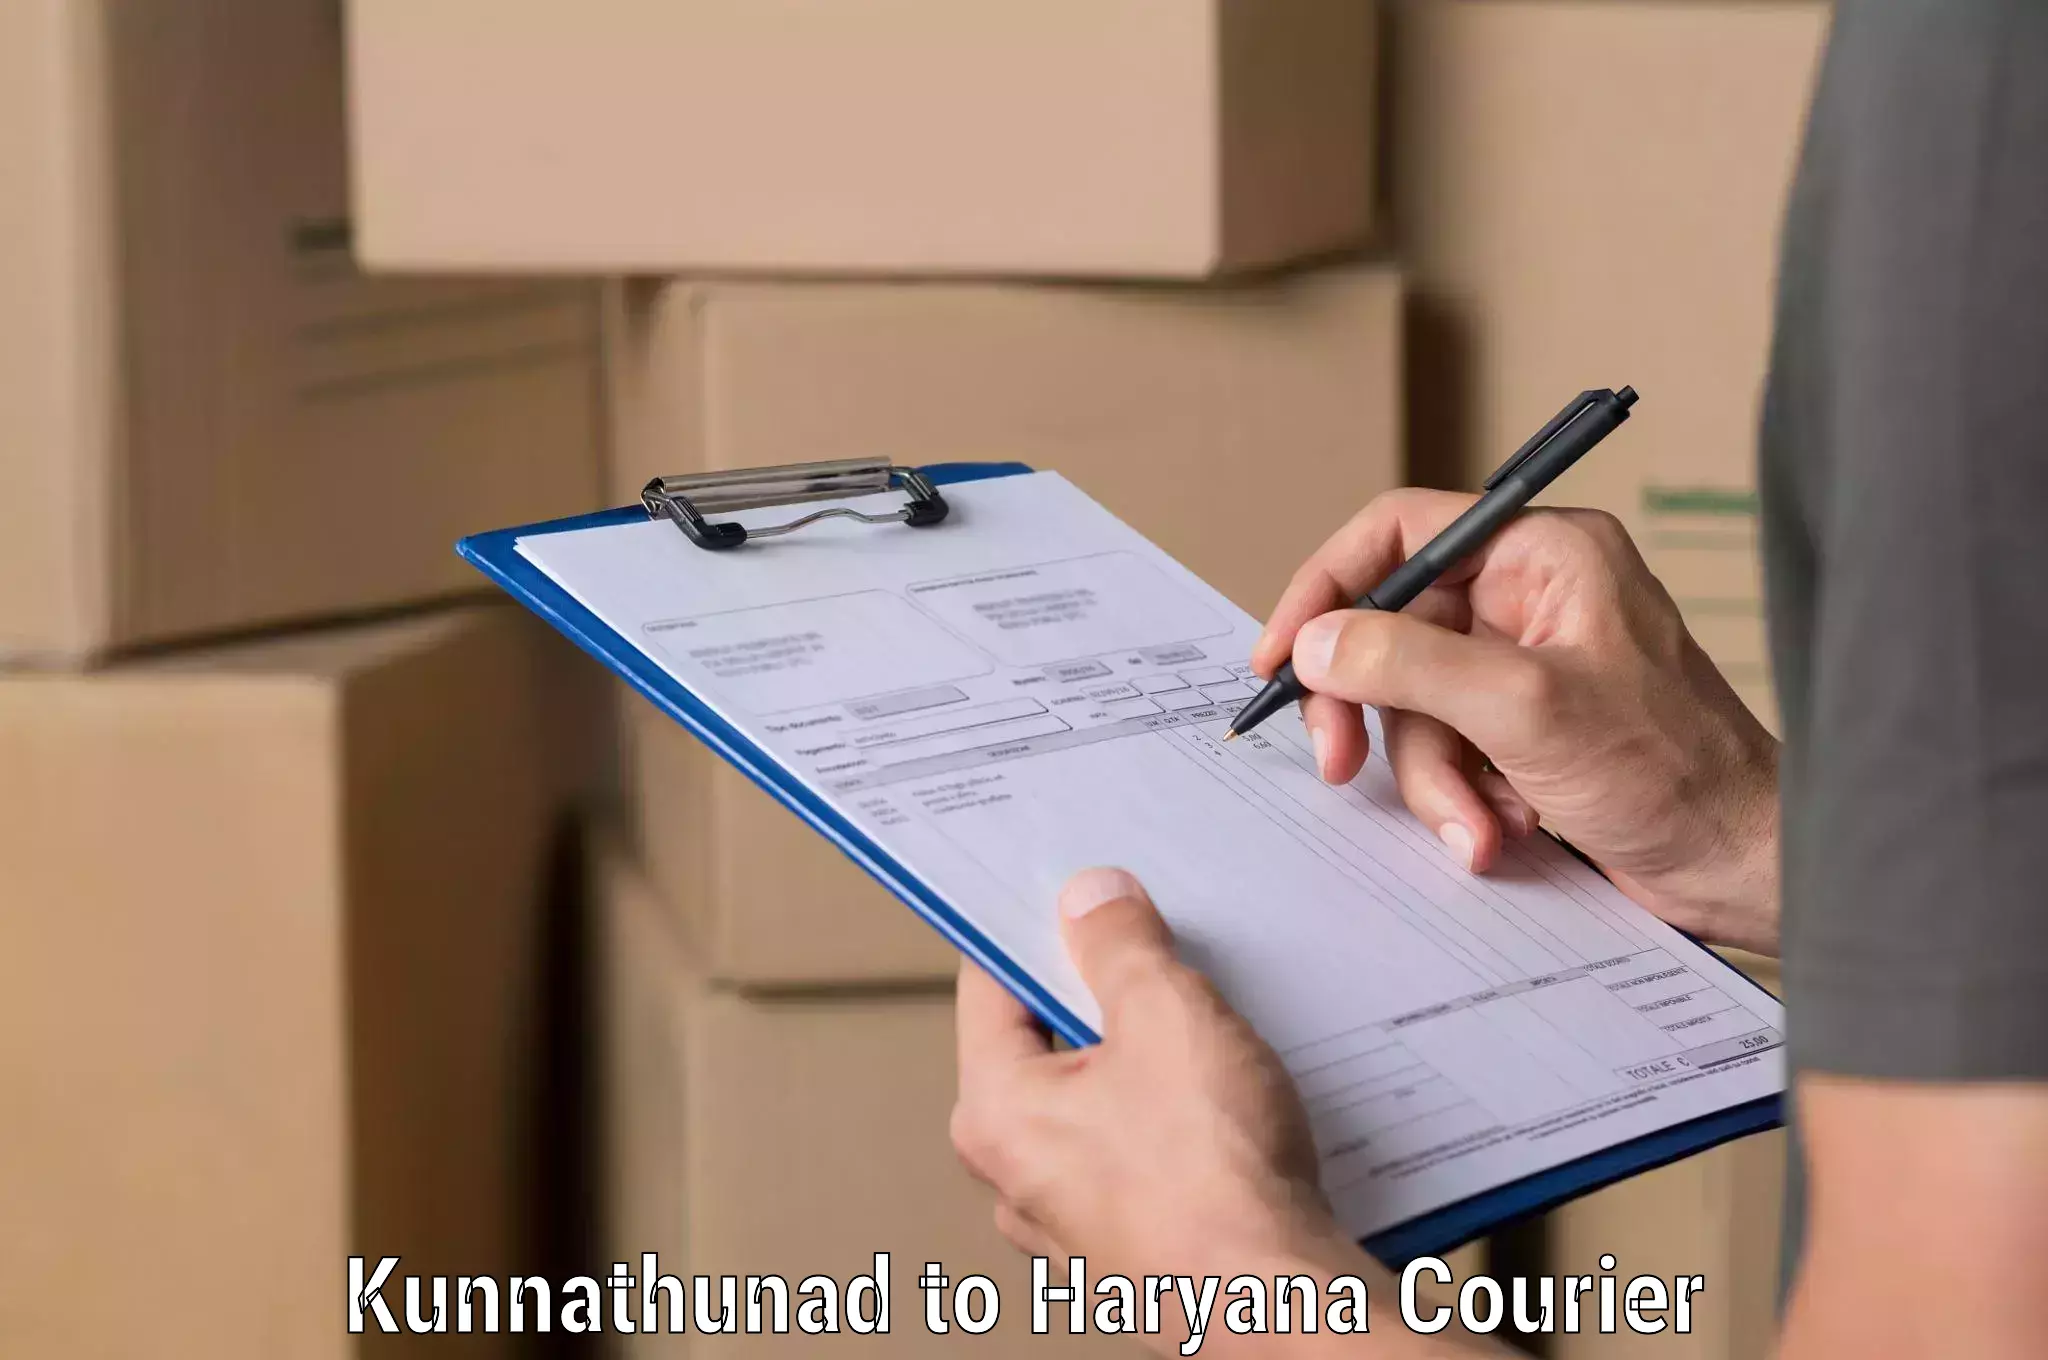 Customized shipping options Kunnathunad to Chaudhary Charan Singh Haryana Agricultural University Hisar